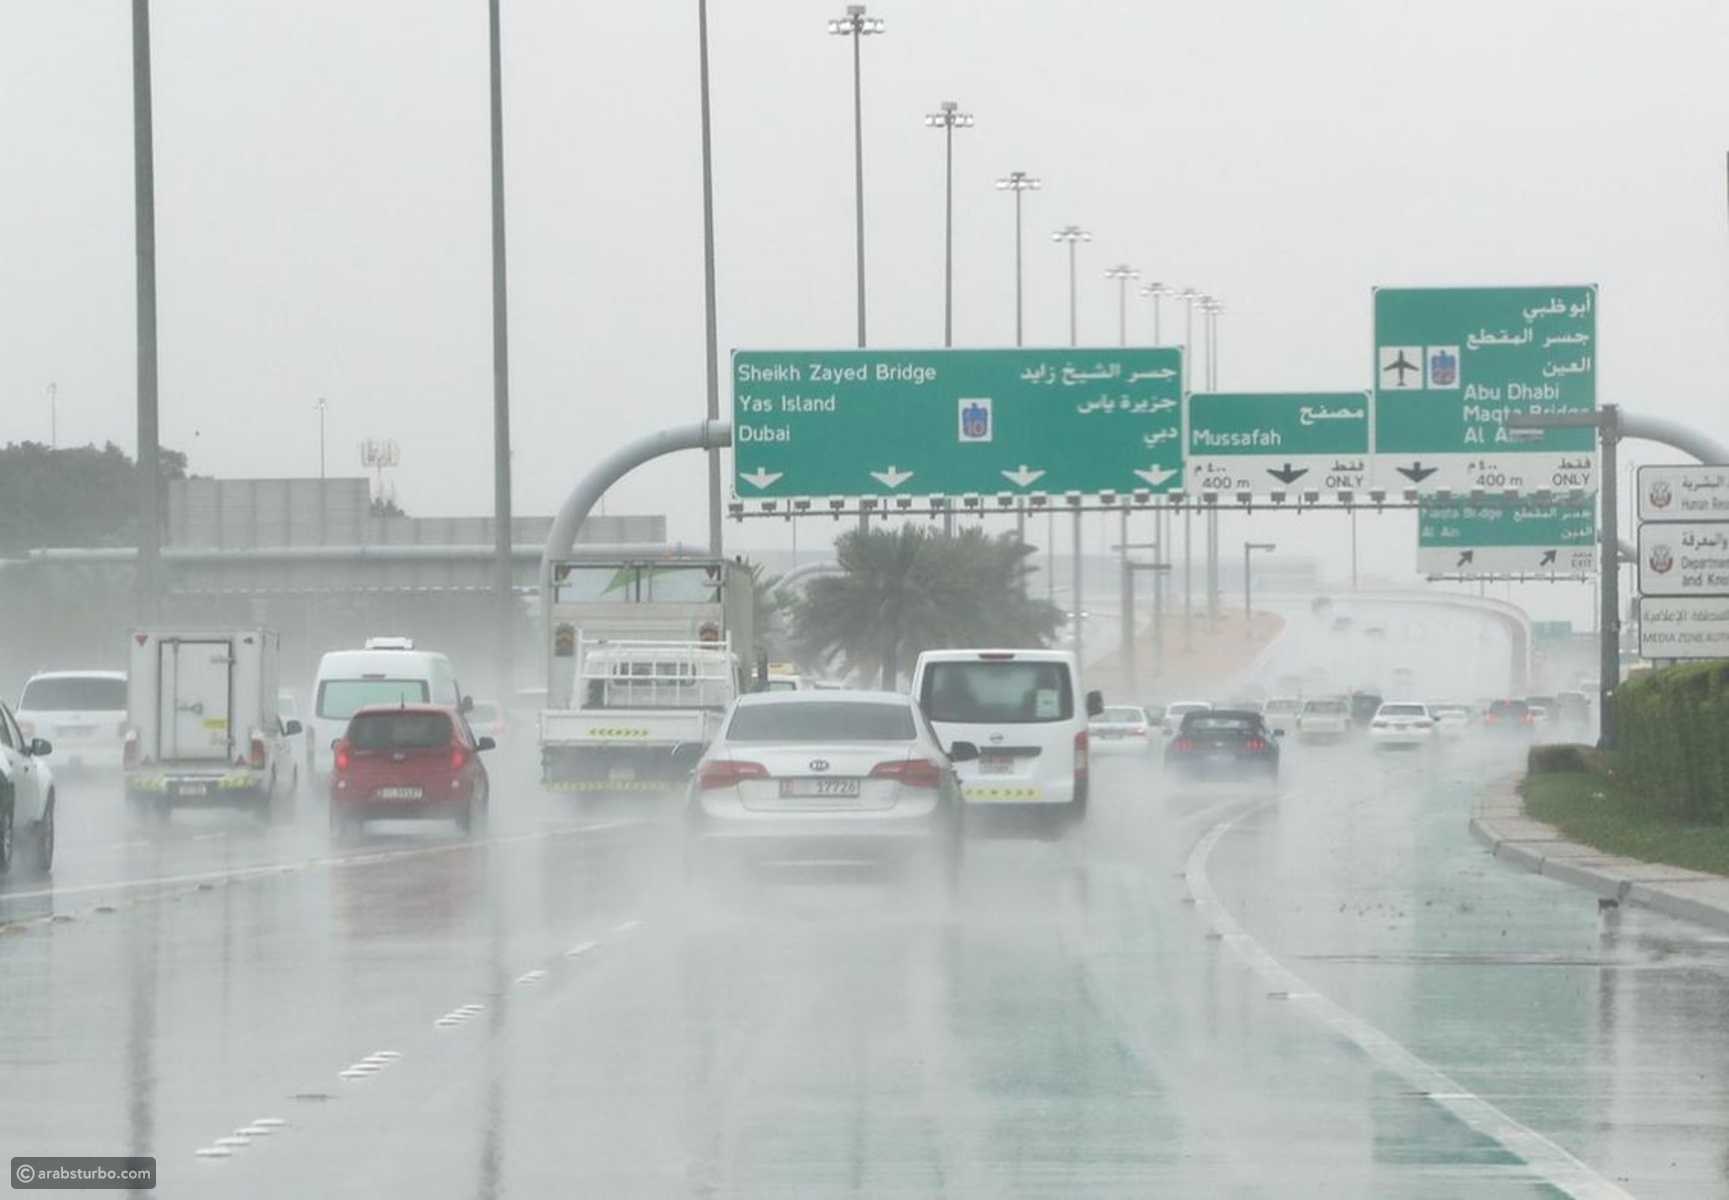 Погода дубай на 14 вода. Ливень в Дубае. Сильный дождь в Дубае. Dubai weather Rain. Шарджа ливень.